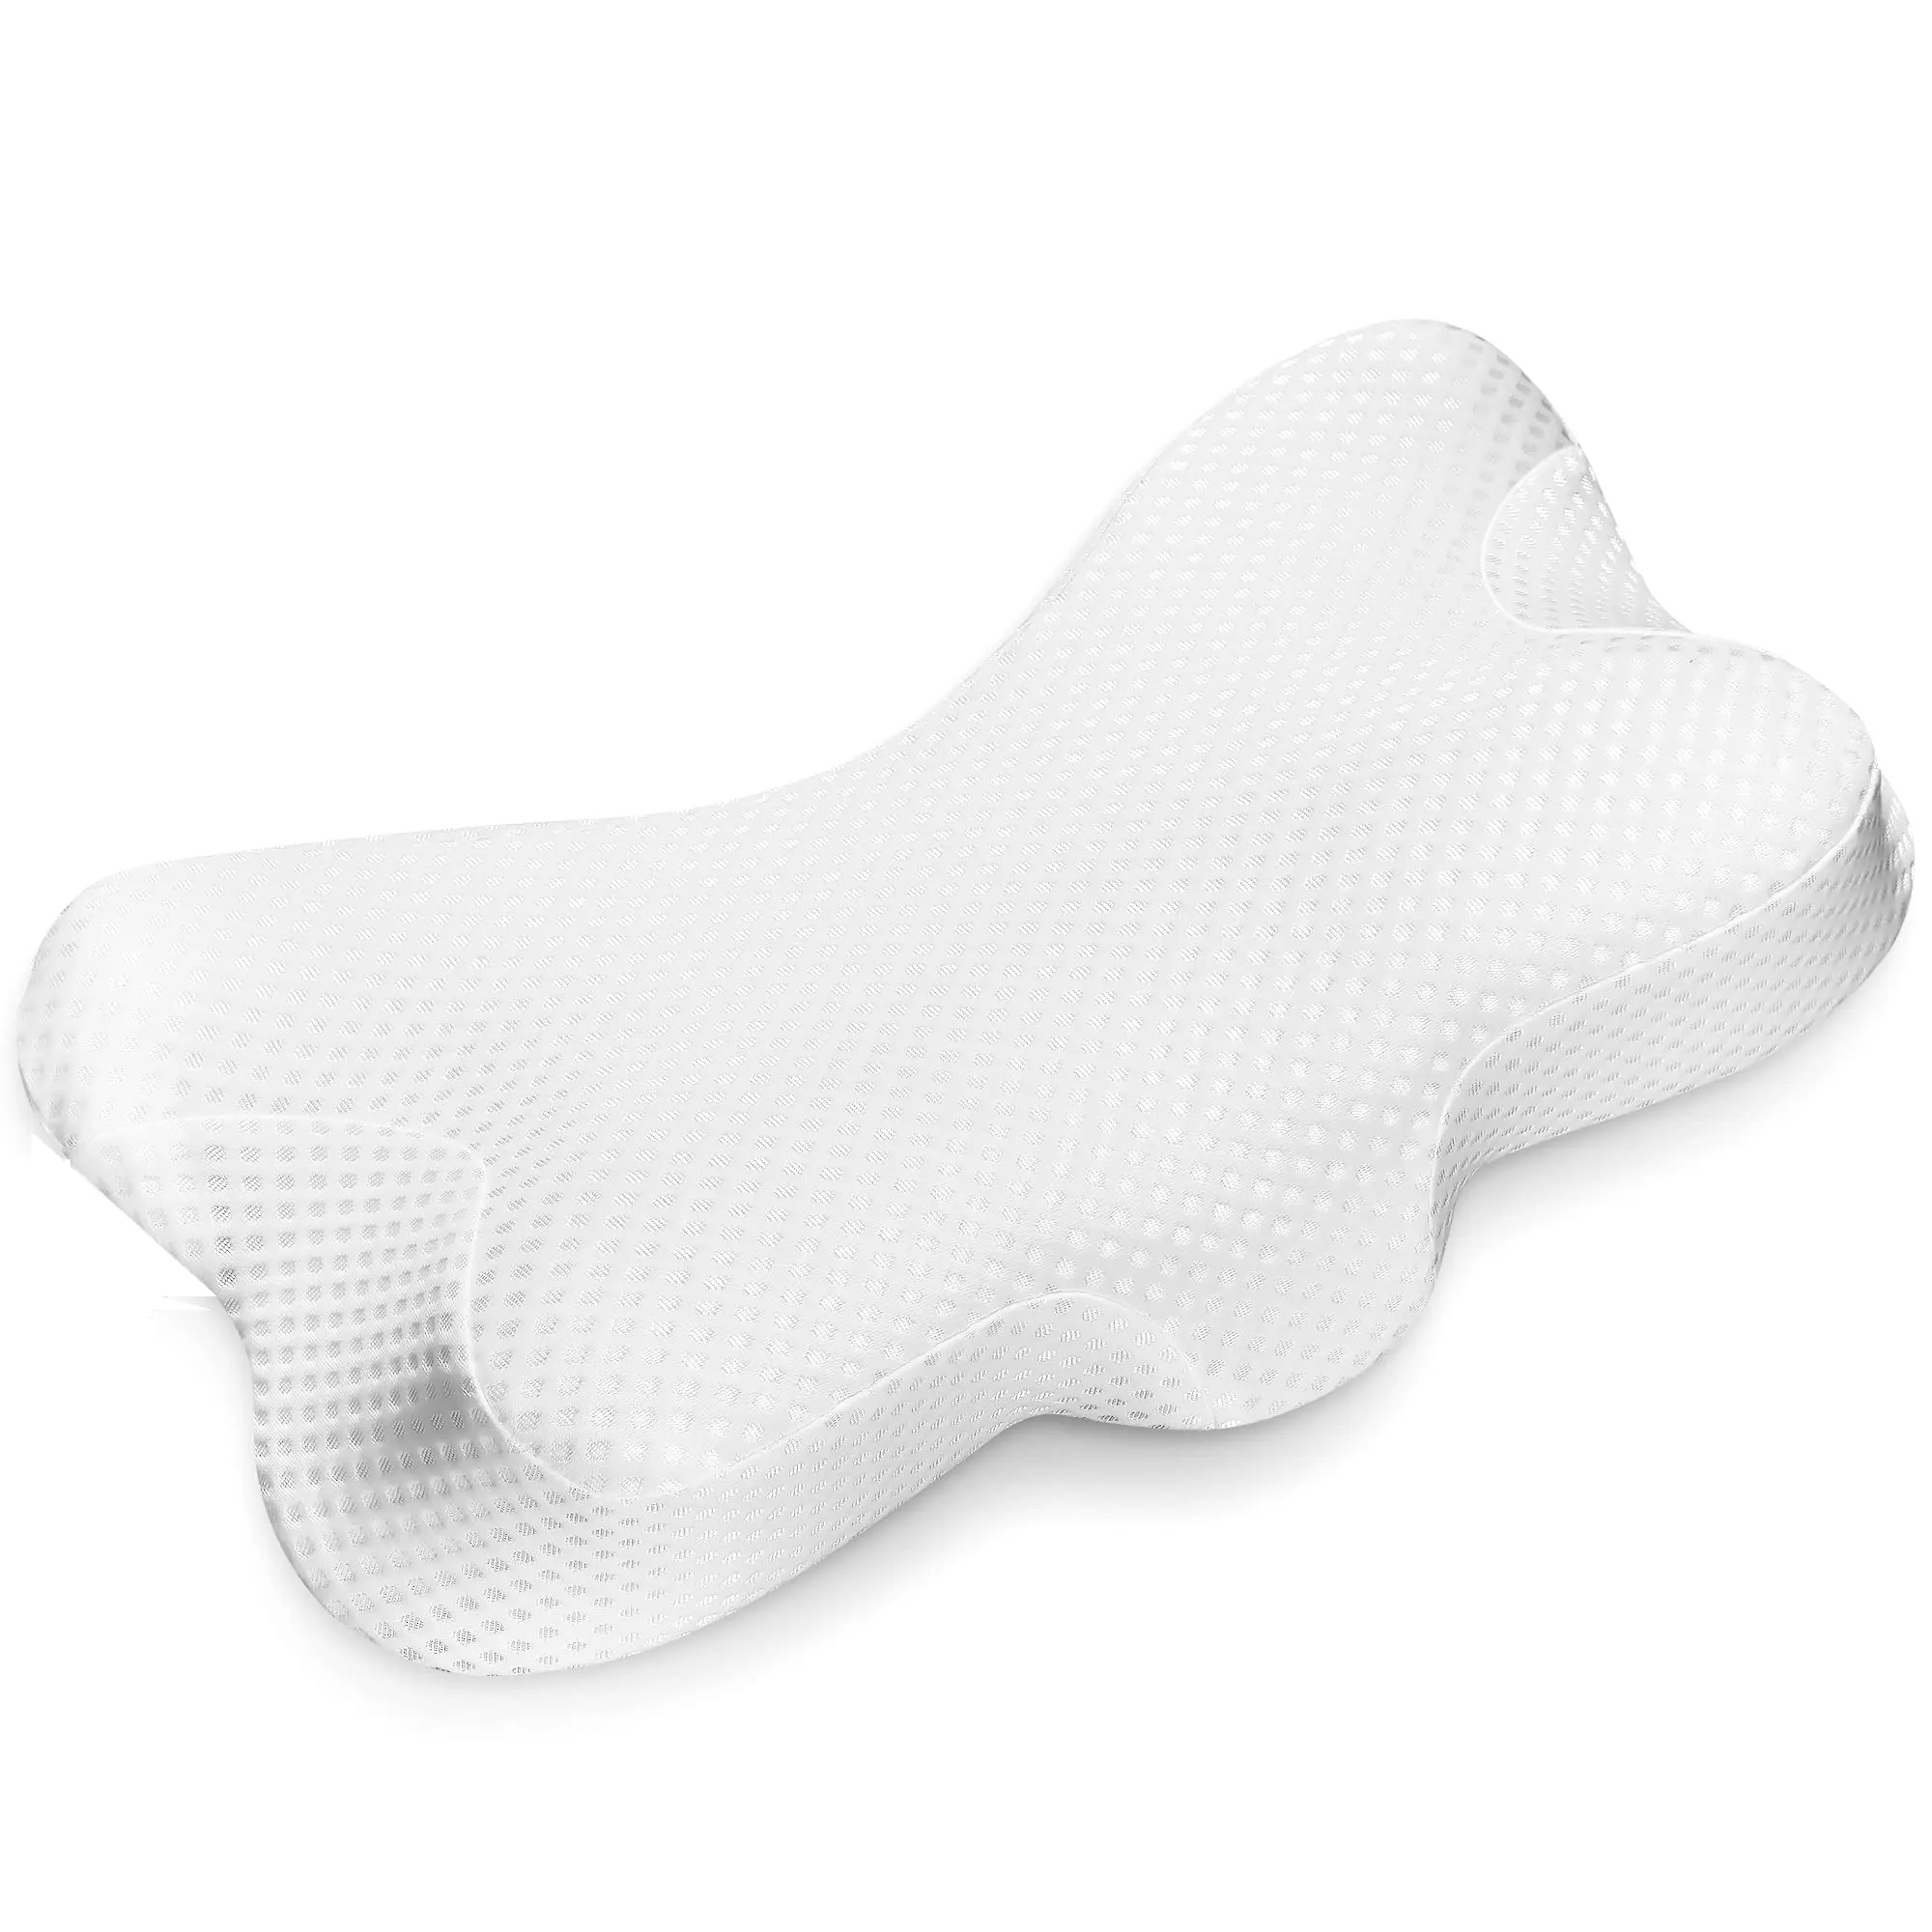 La migliore vendita del 2022 cuscini ergonomici per il collo cervicale per tutte le posizioni di sonno con coperture morbide lavabili con cerniera//